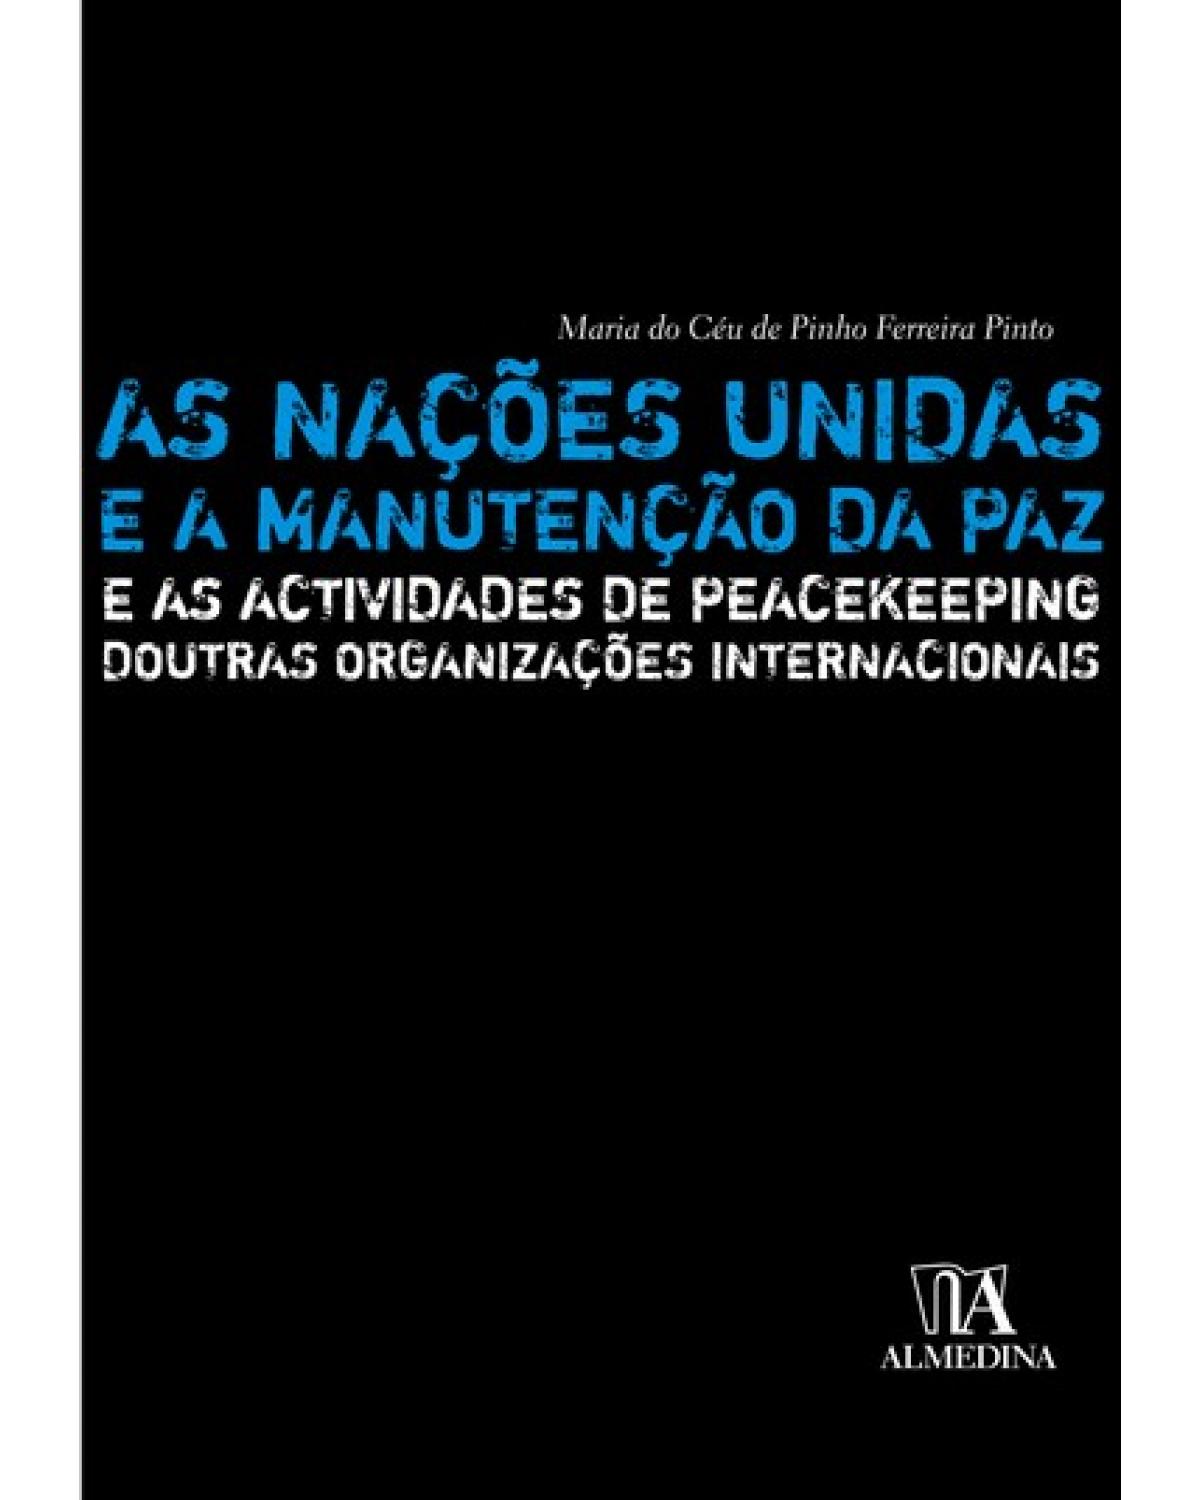 As Nações Unidas e a manutenção da paz: e as actividades de peacekeeping doutras organizações internacionais - 1ª Edição | 2007